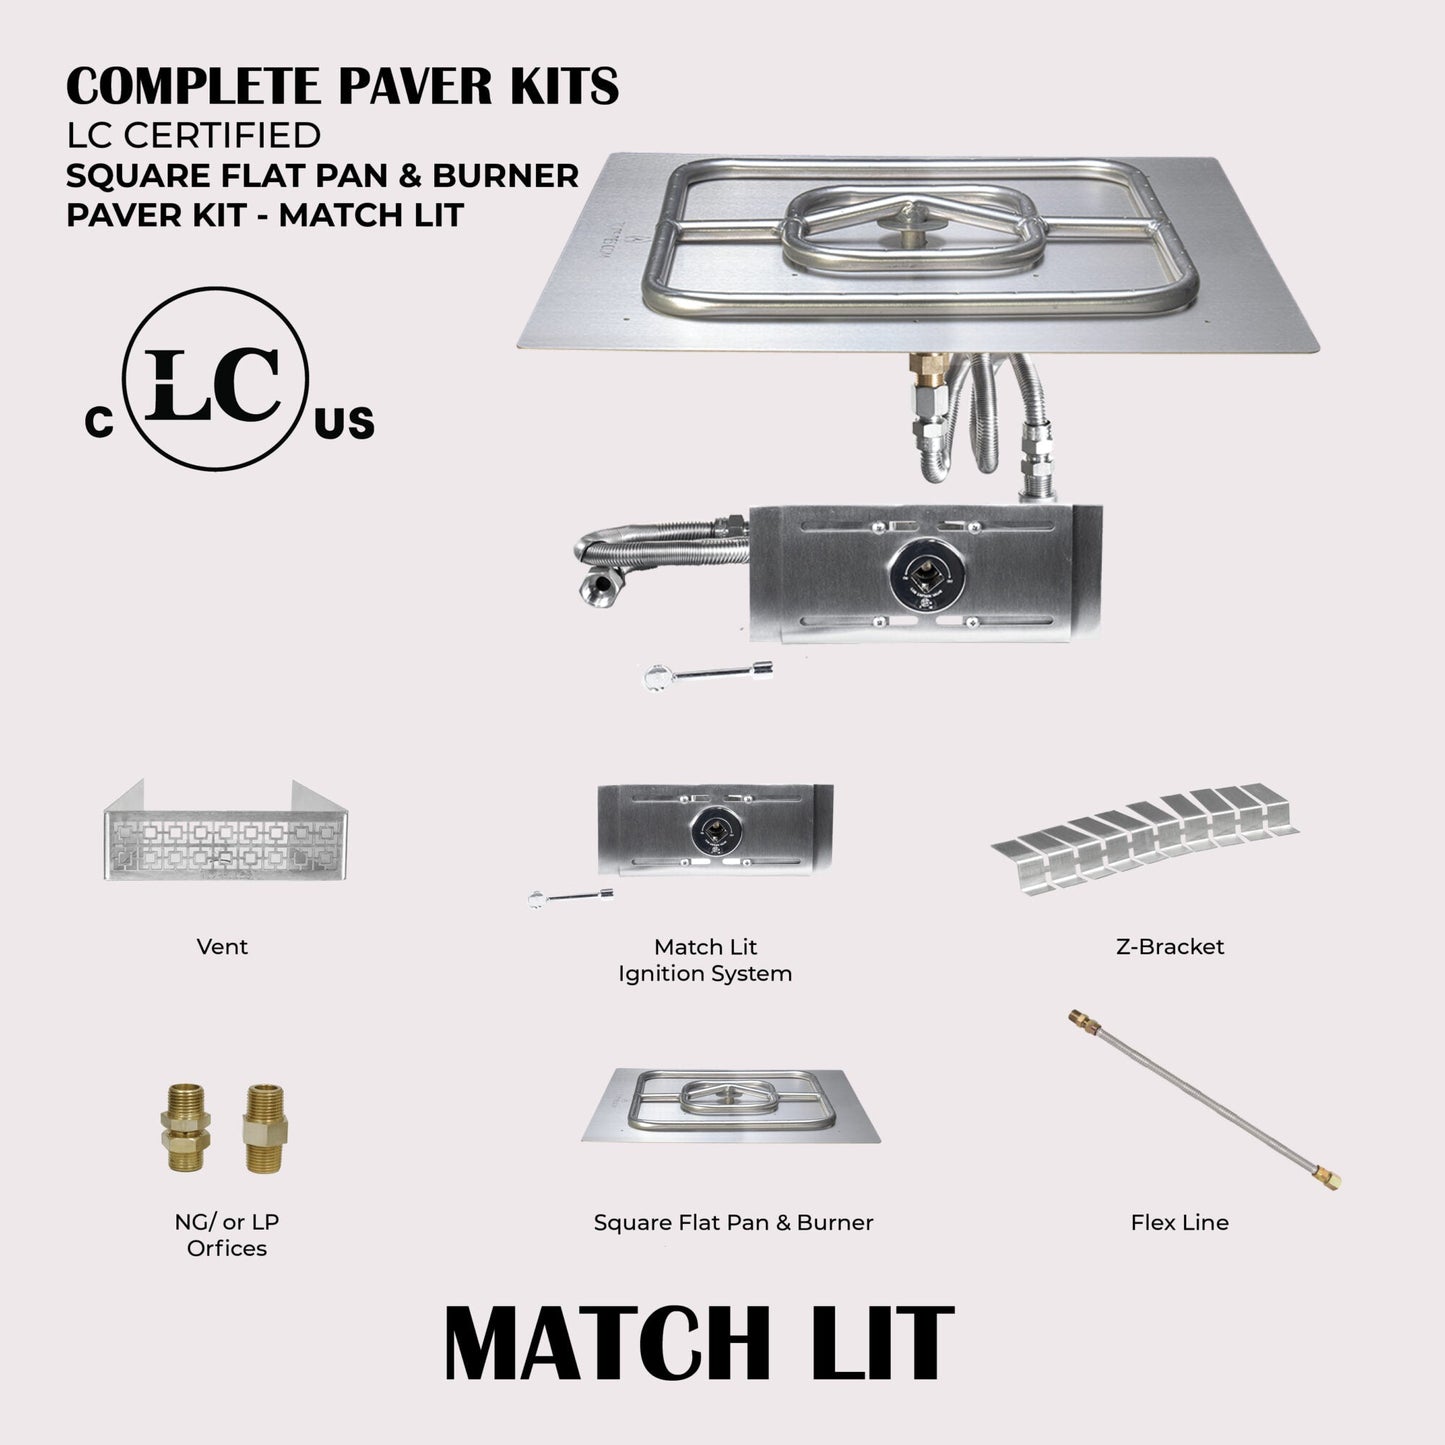 Square Flat Pan & Square Burner Paver Kit - Match Lit Ignition